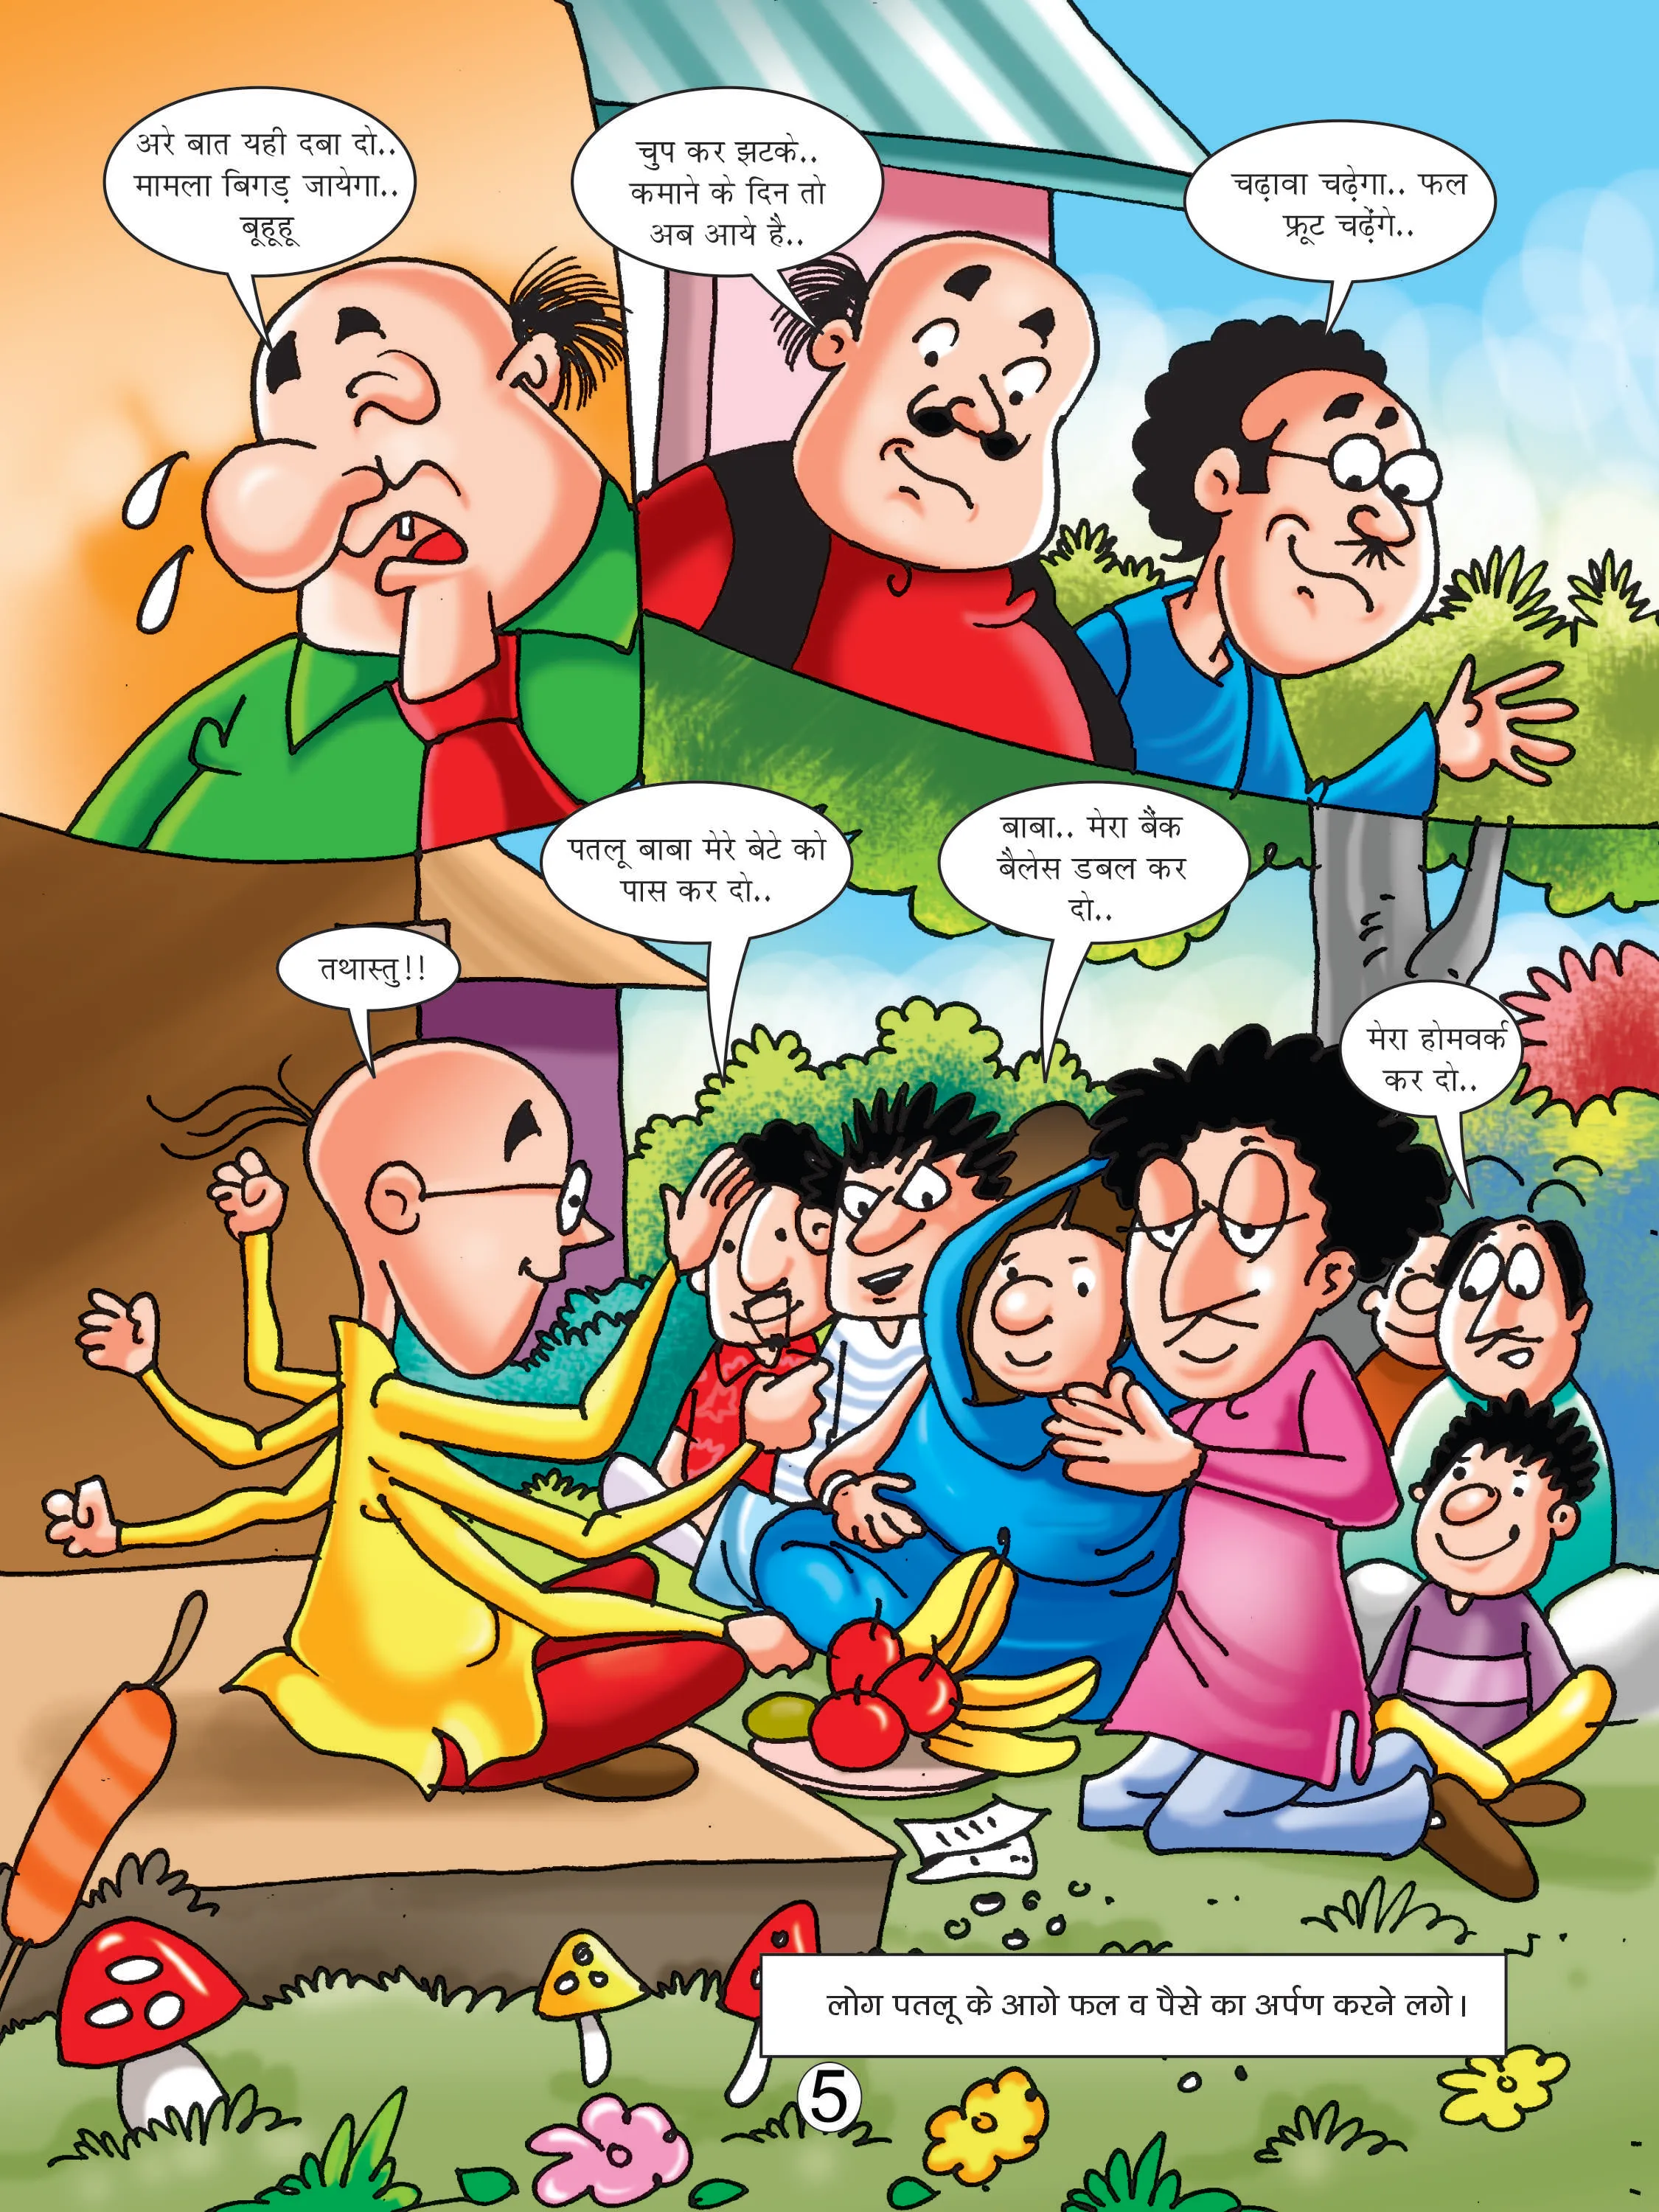 Lotpot e comics cartoon character motu patlu